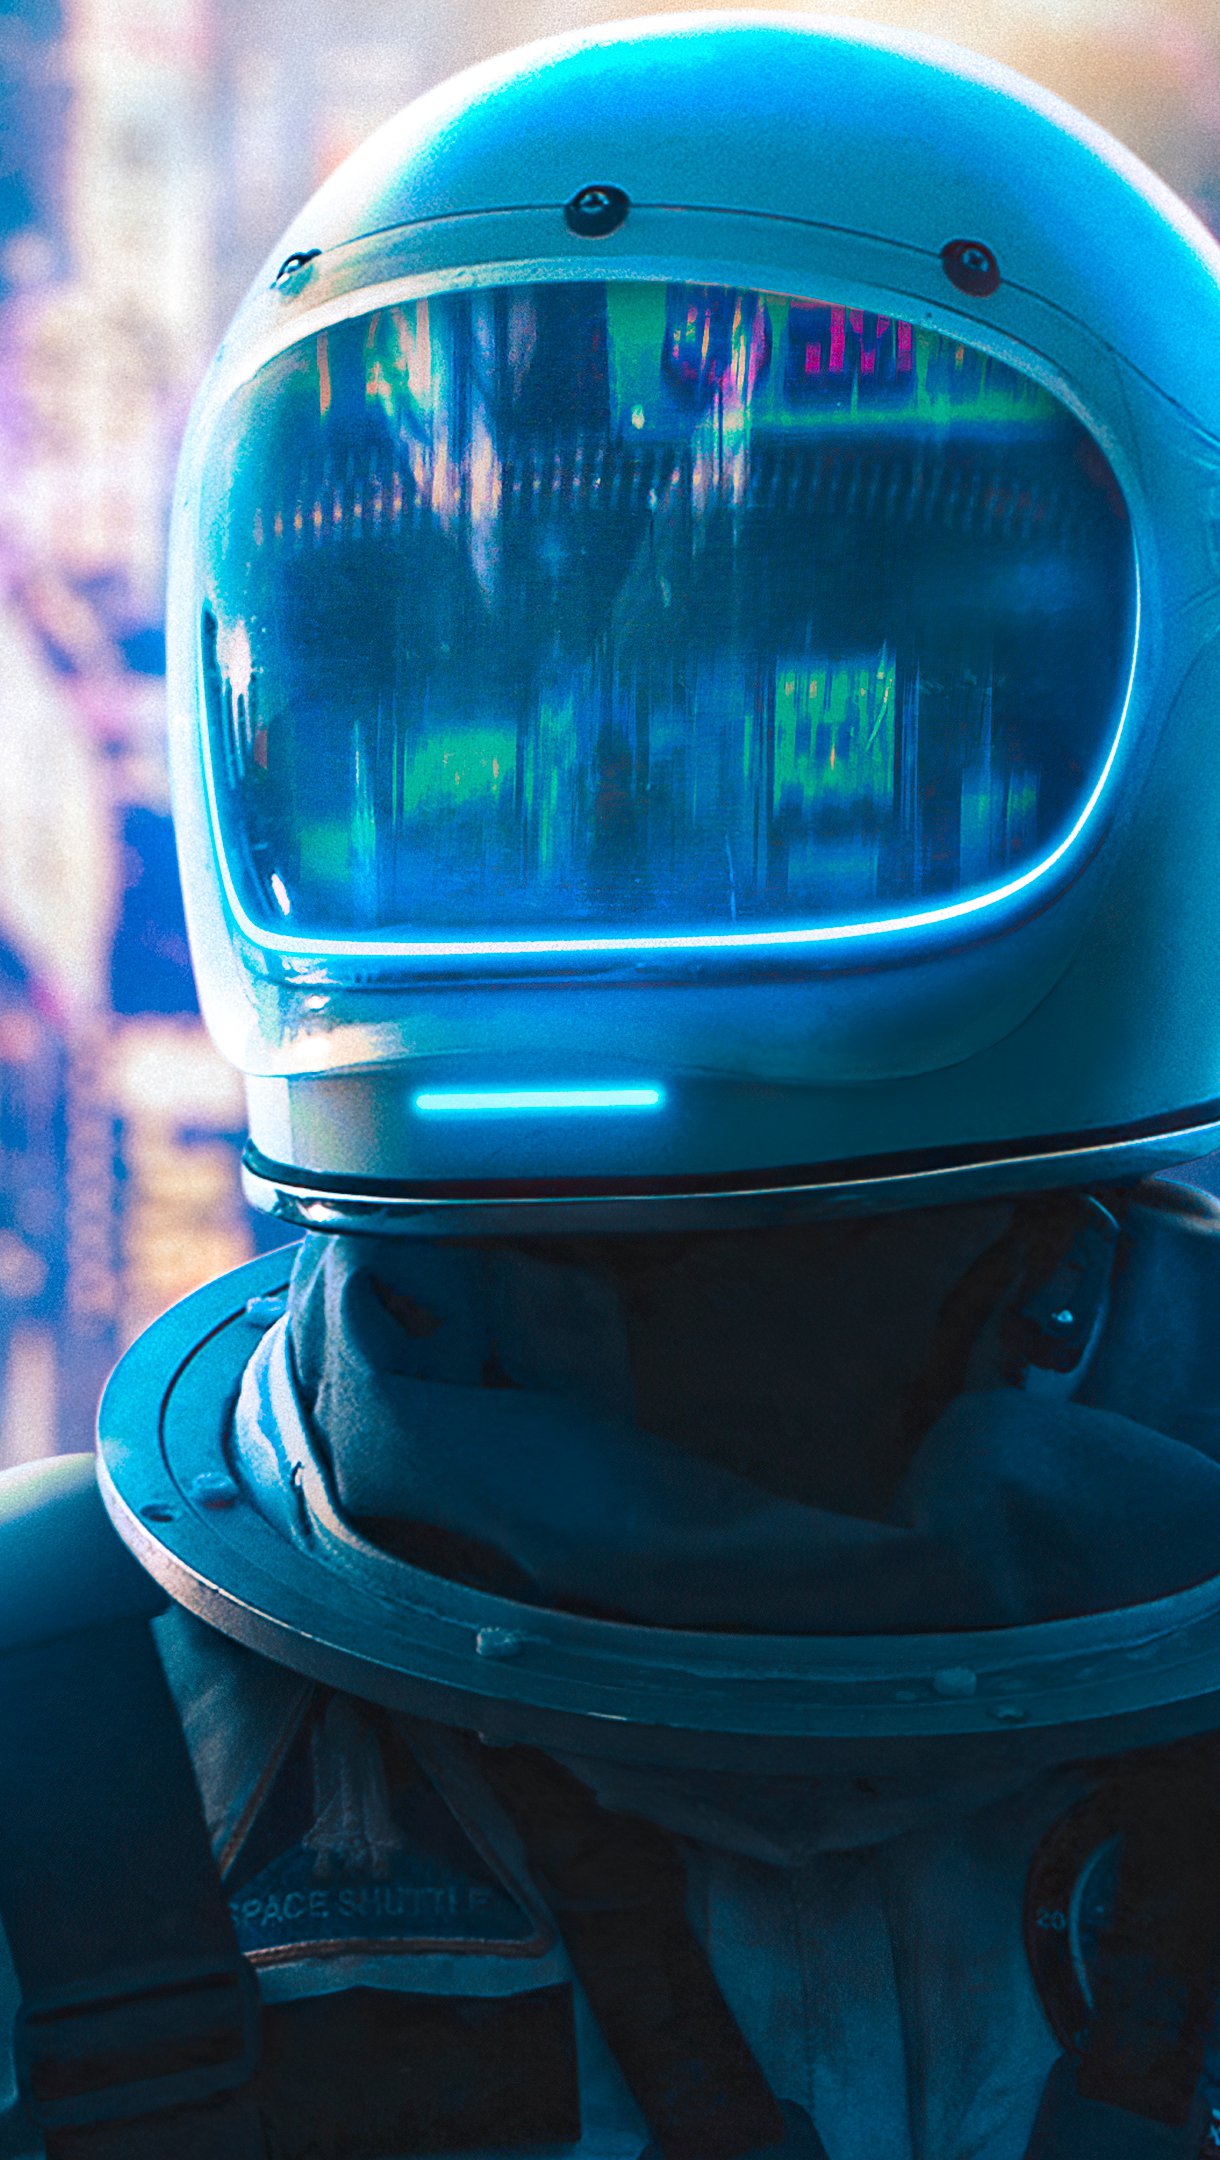 Fondos de pantalla Astronauta en ciudad neon Vertical